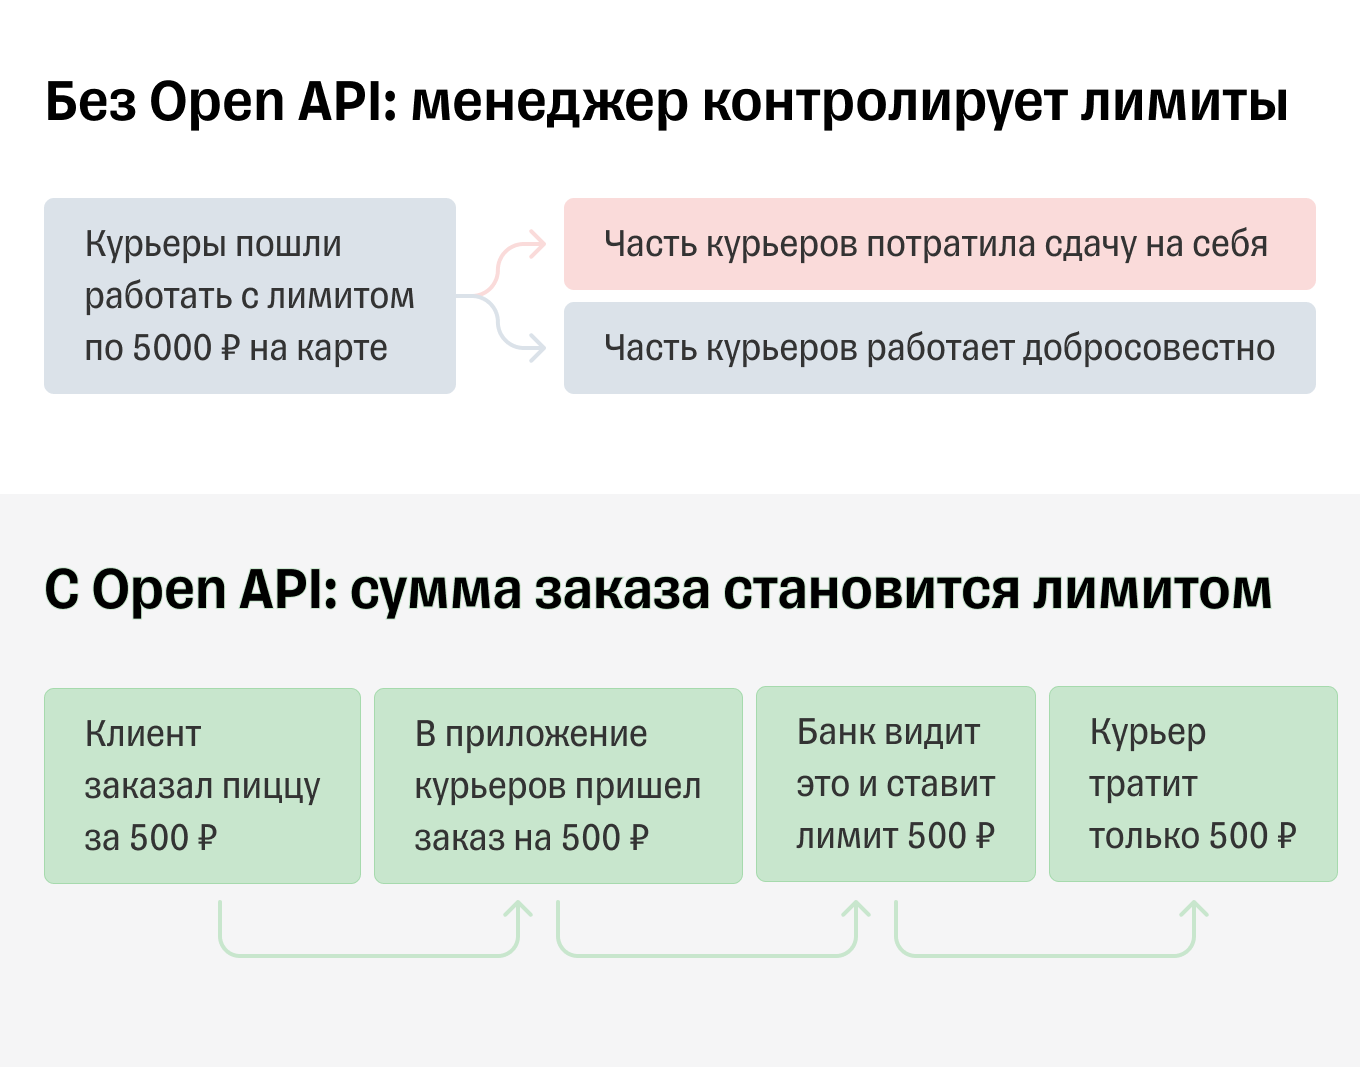 Автоматический контроль лимитов с Open API